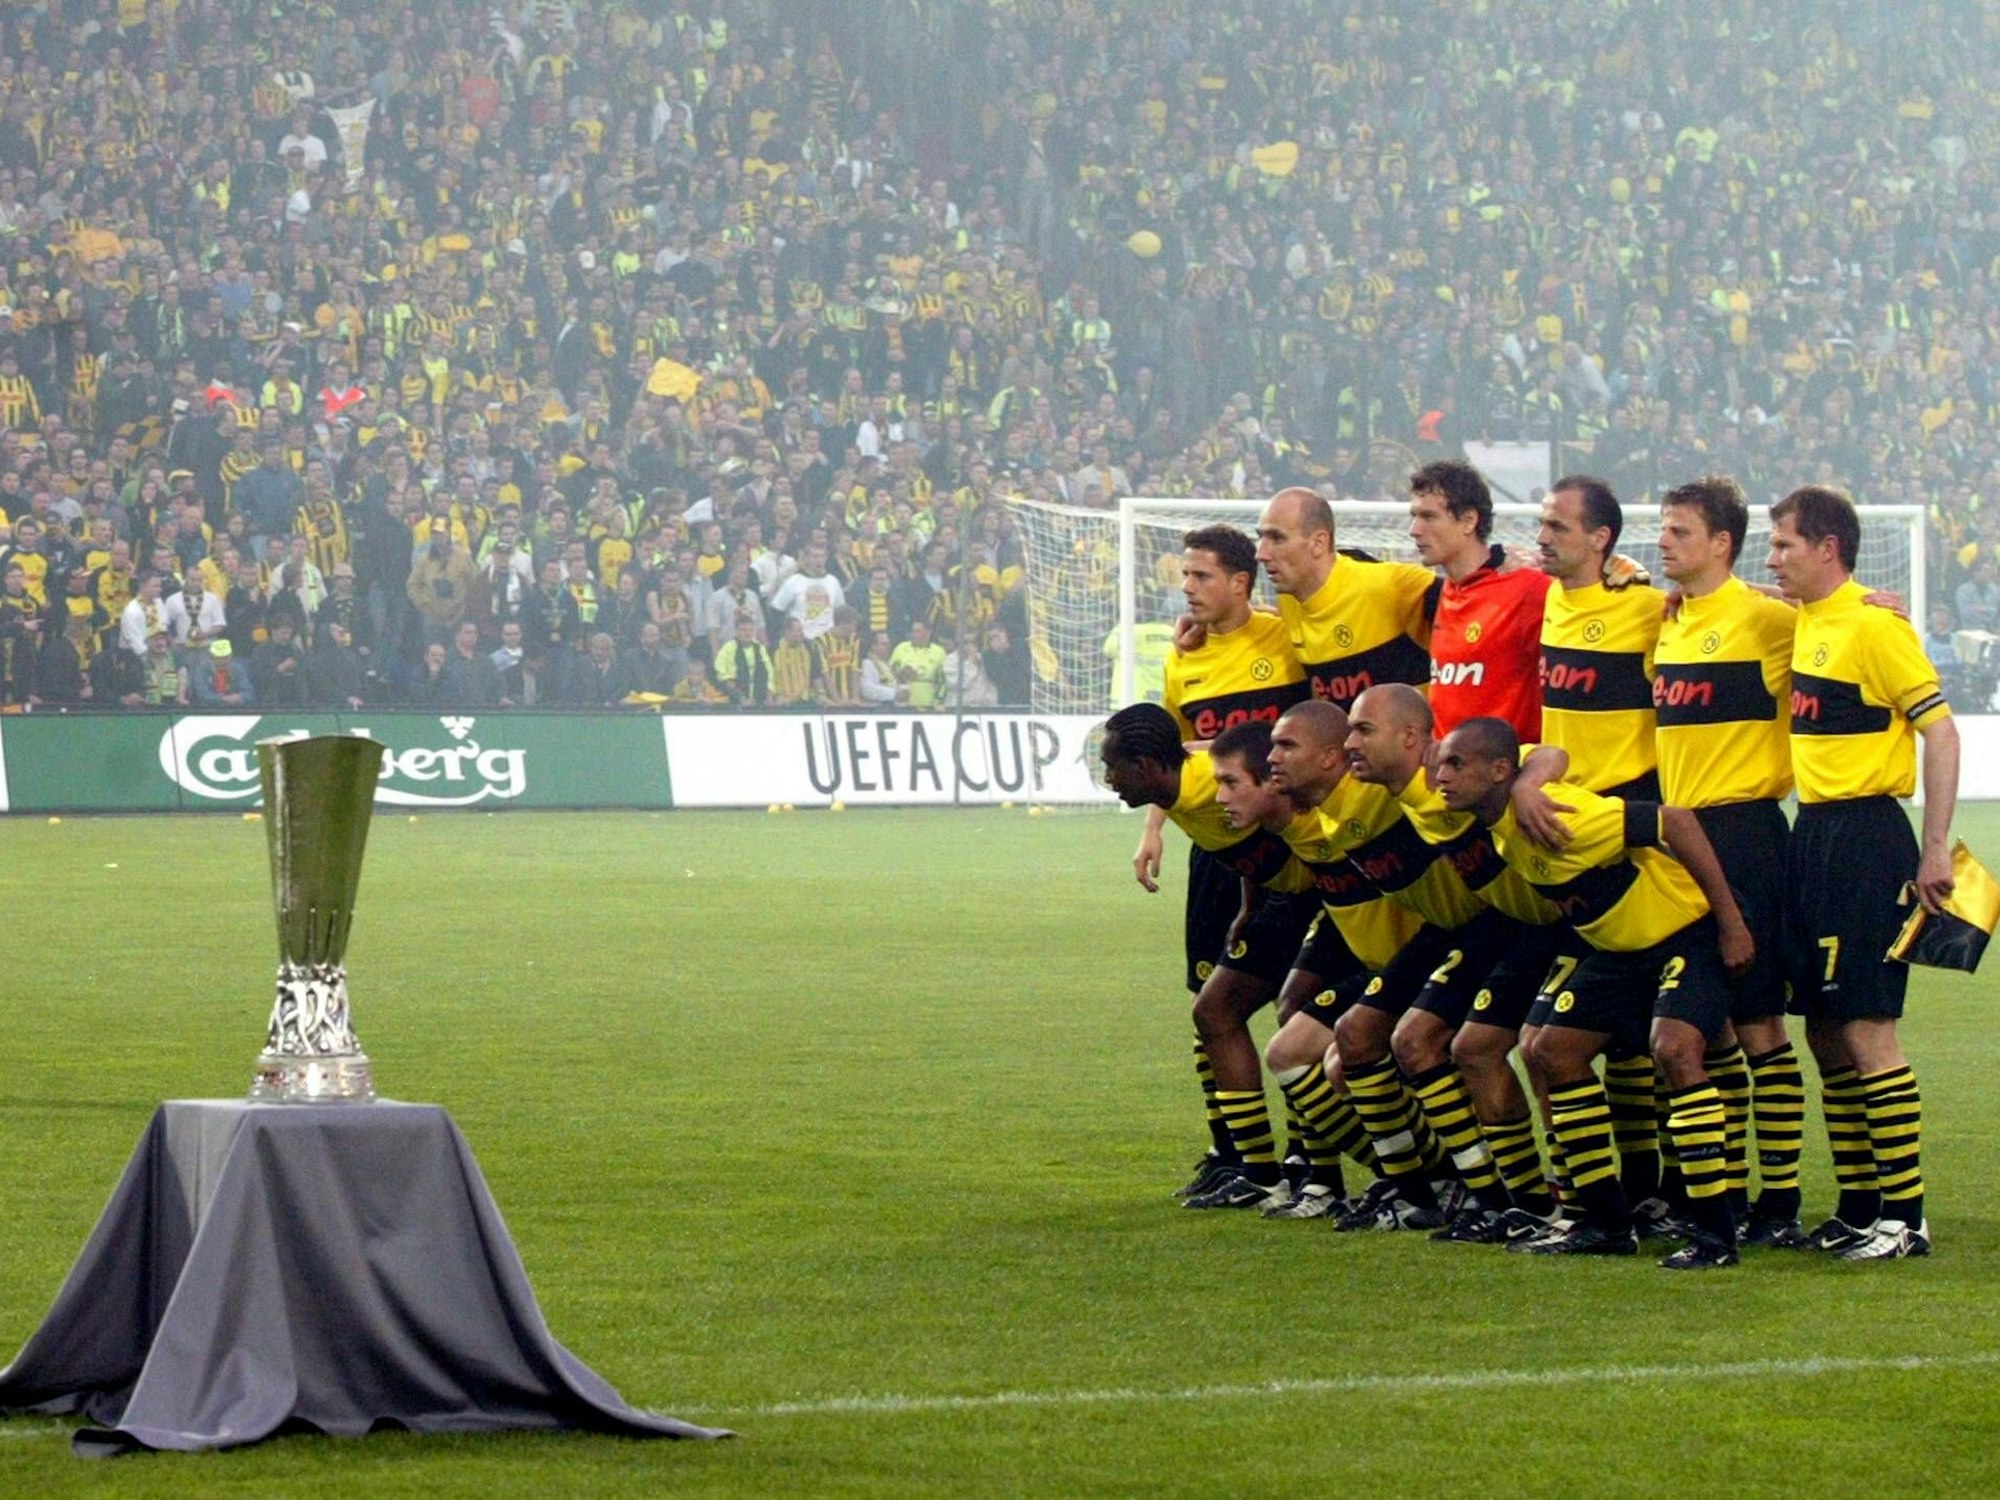 Mannschaftsbild des BVB vor dem Uefa-Cup.